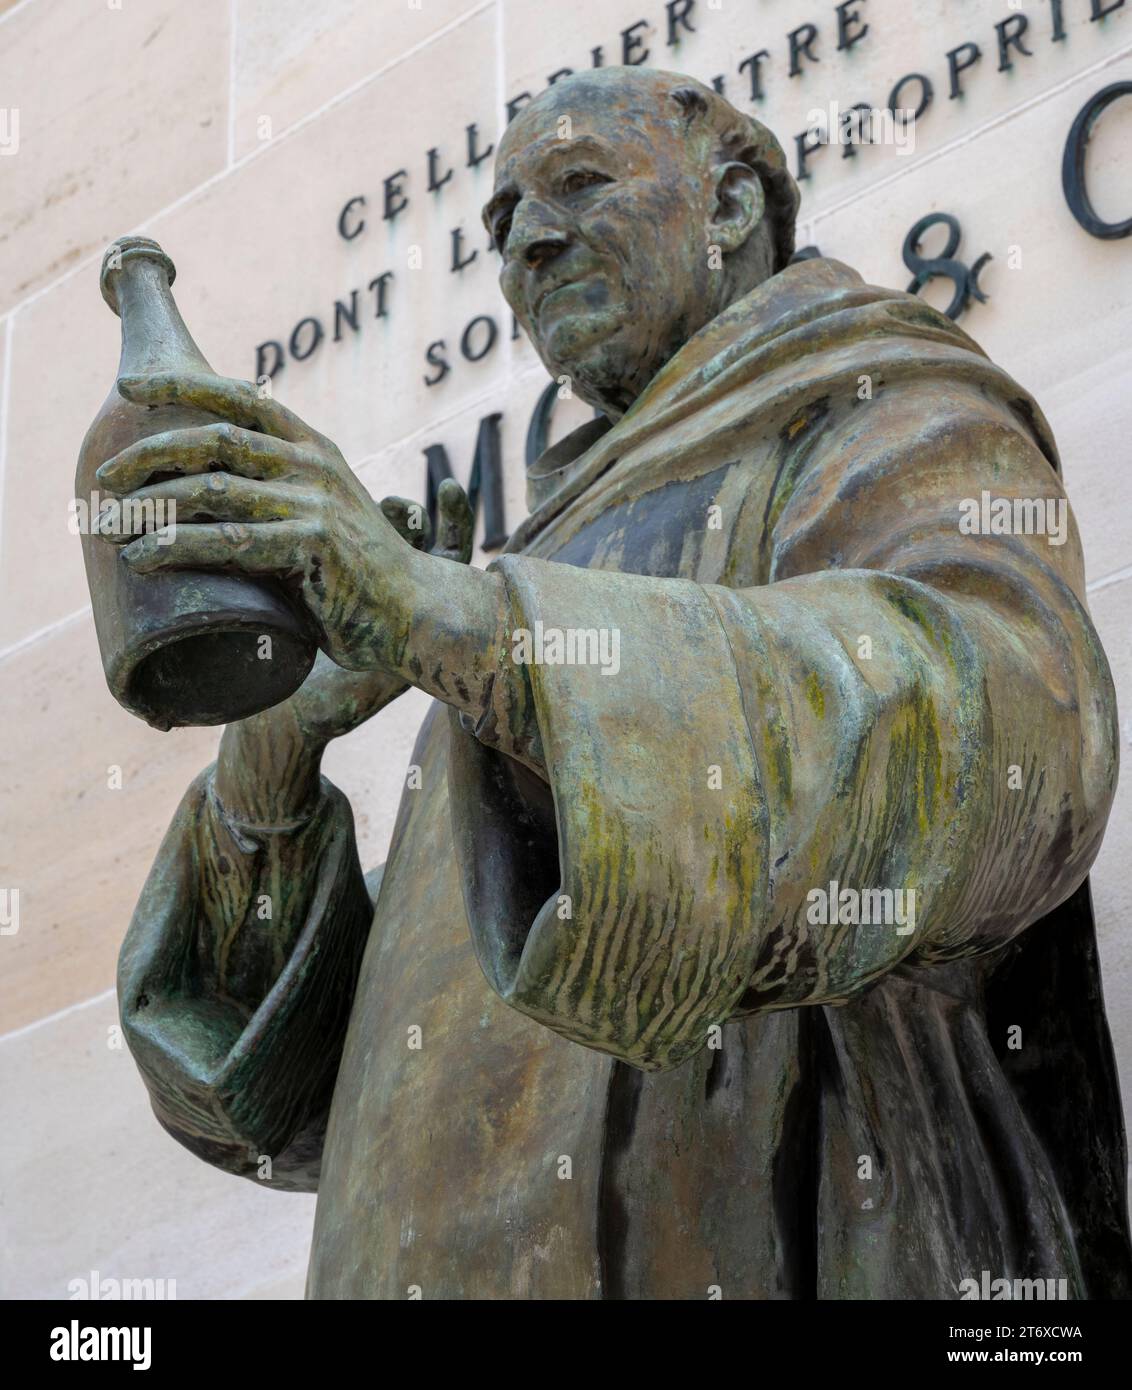 Statue de Don Pierre Pérignon devant le siège de Moët et Chandon, Epernay, Champagne, France. Banque D'Images